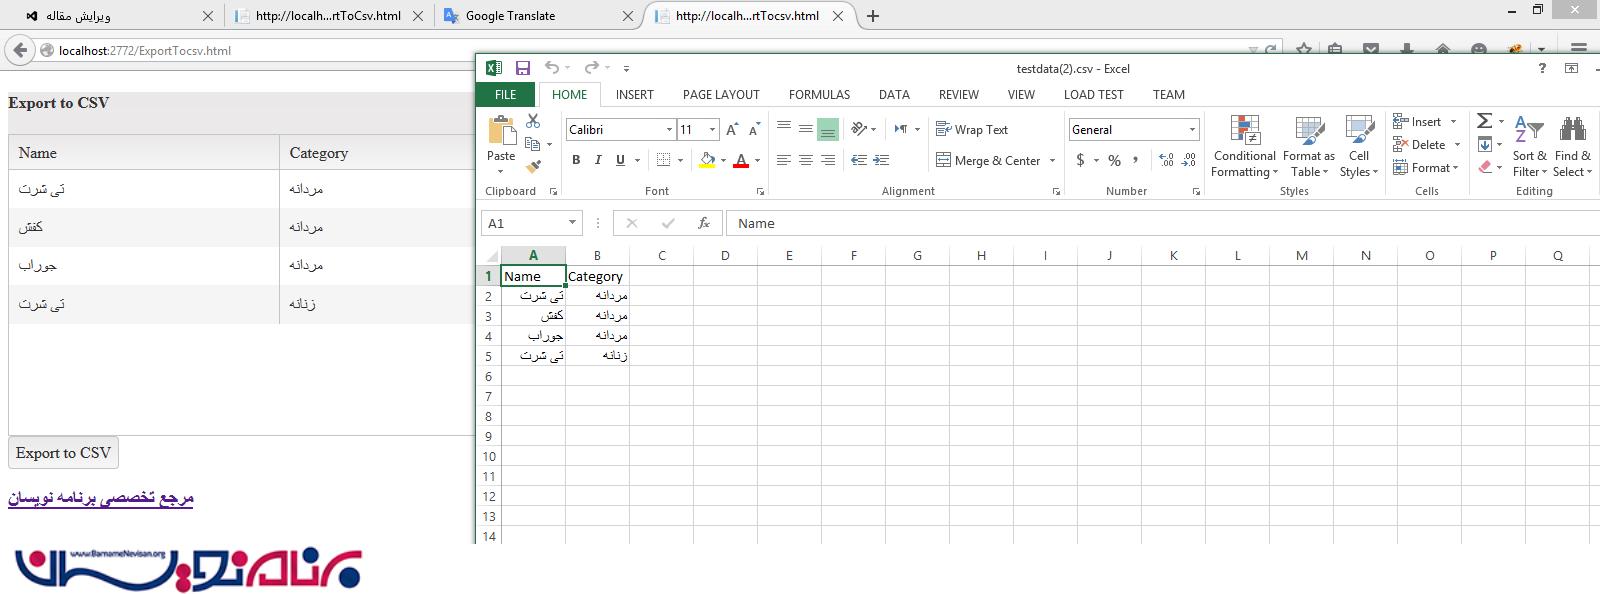 دریافت خروجی از گرید کندو به فرمت Excel و CSV توسط WebAPI